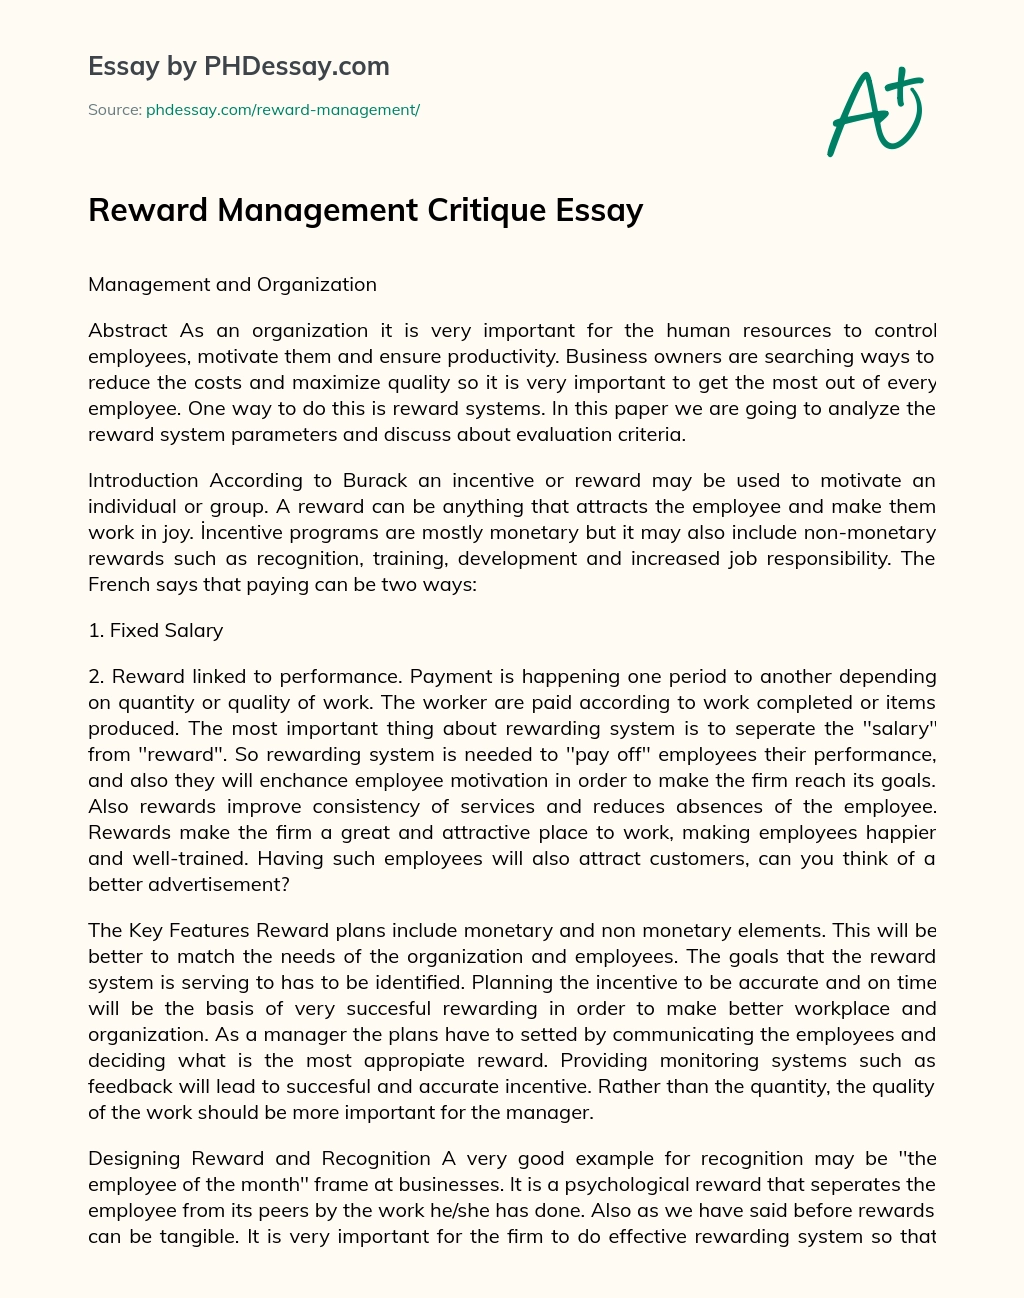 Reward Management Critique Essay essay